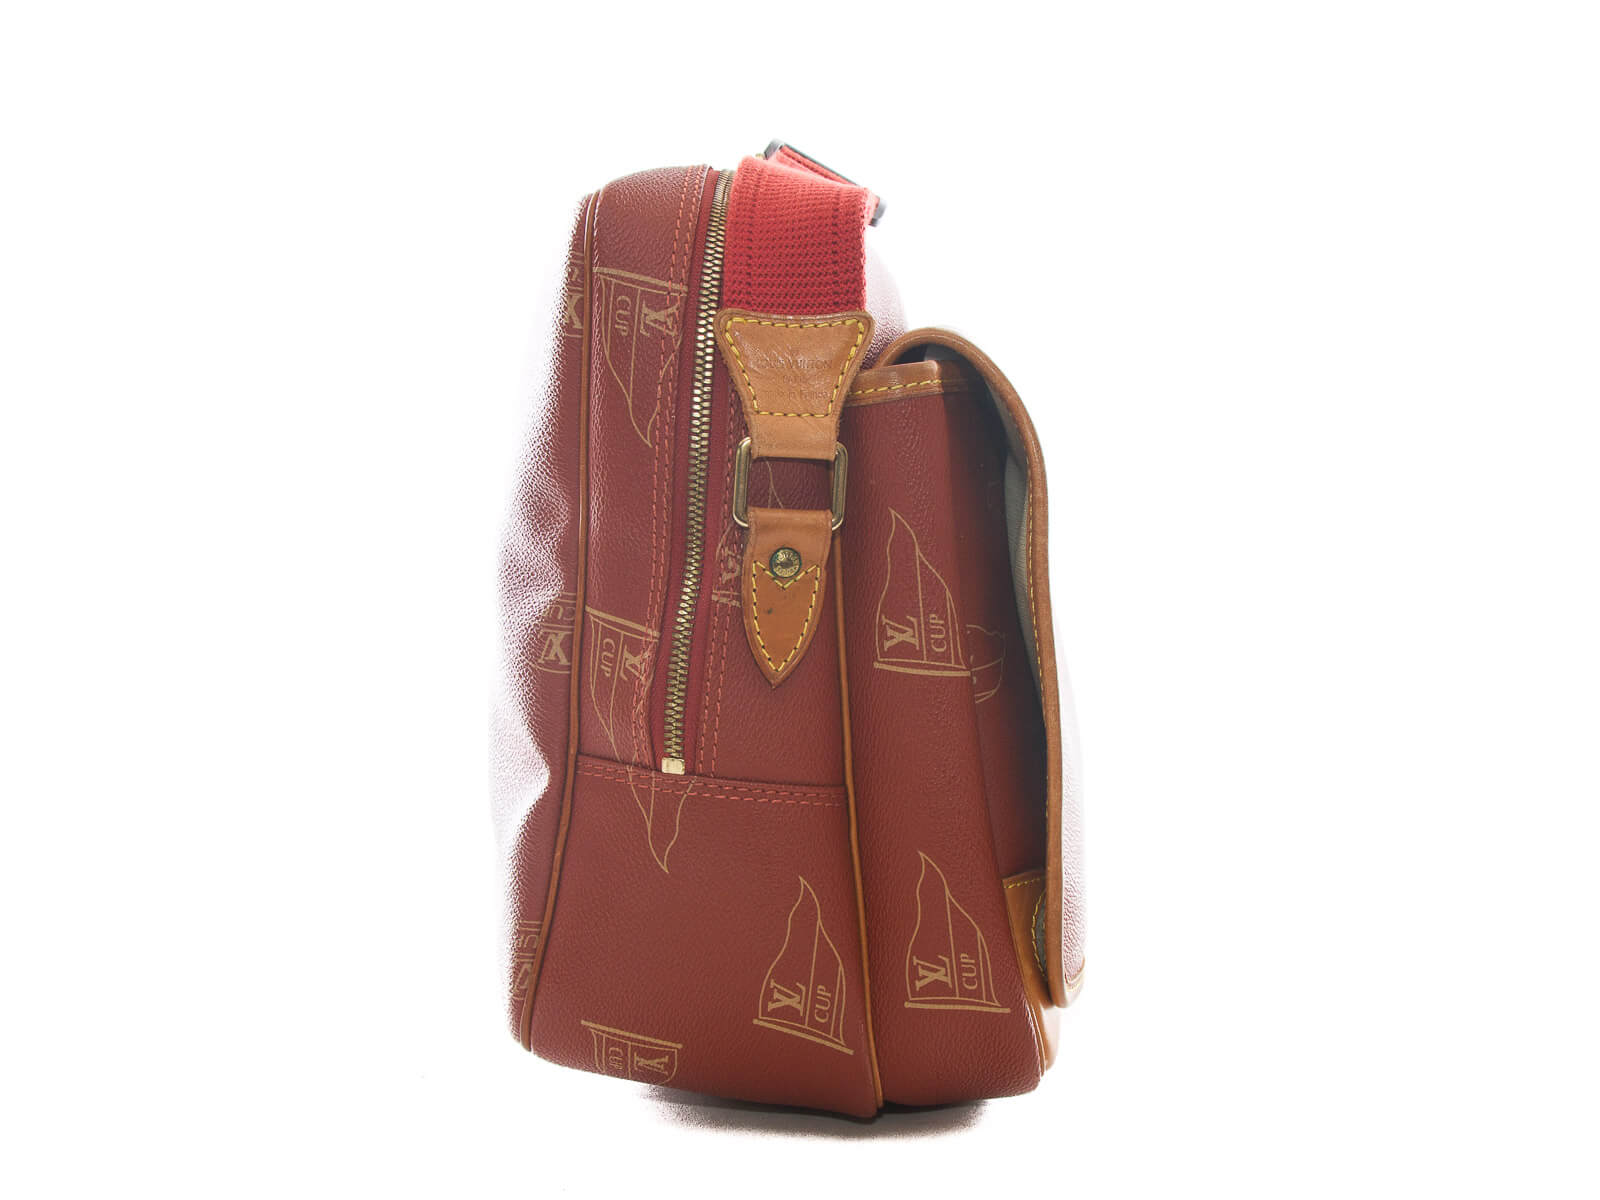 Louis Vuitton Calvi Shoulder Bag